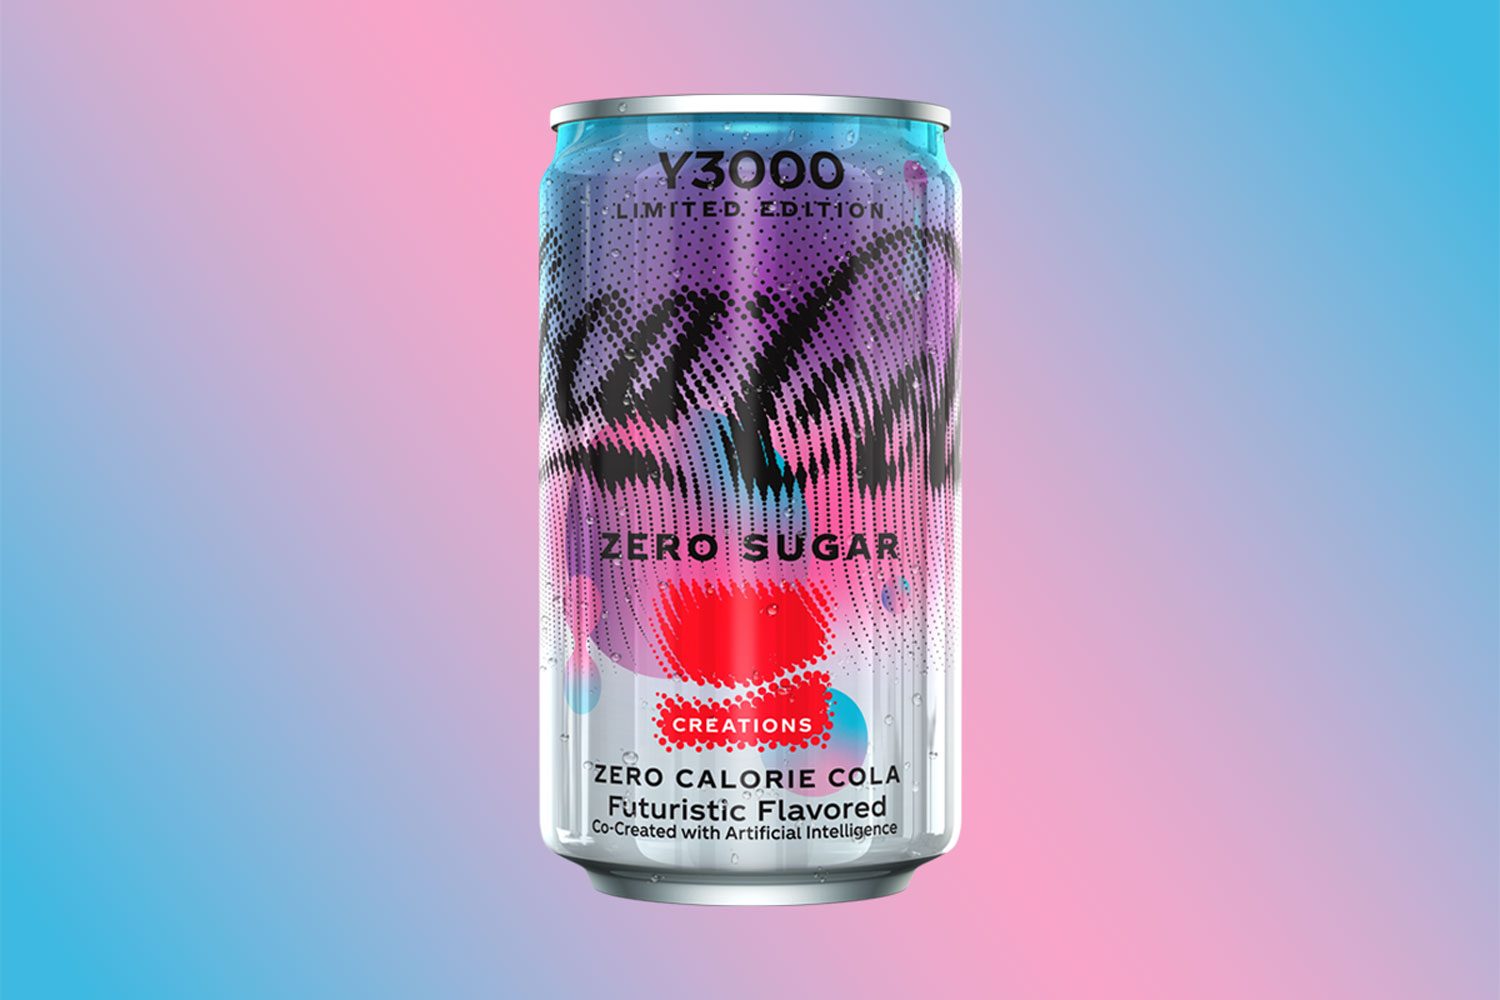 È nata Coca‑Cola Y3000 Zero Sugar L'obiettivo? Entrare nella storia del marketing!